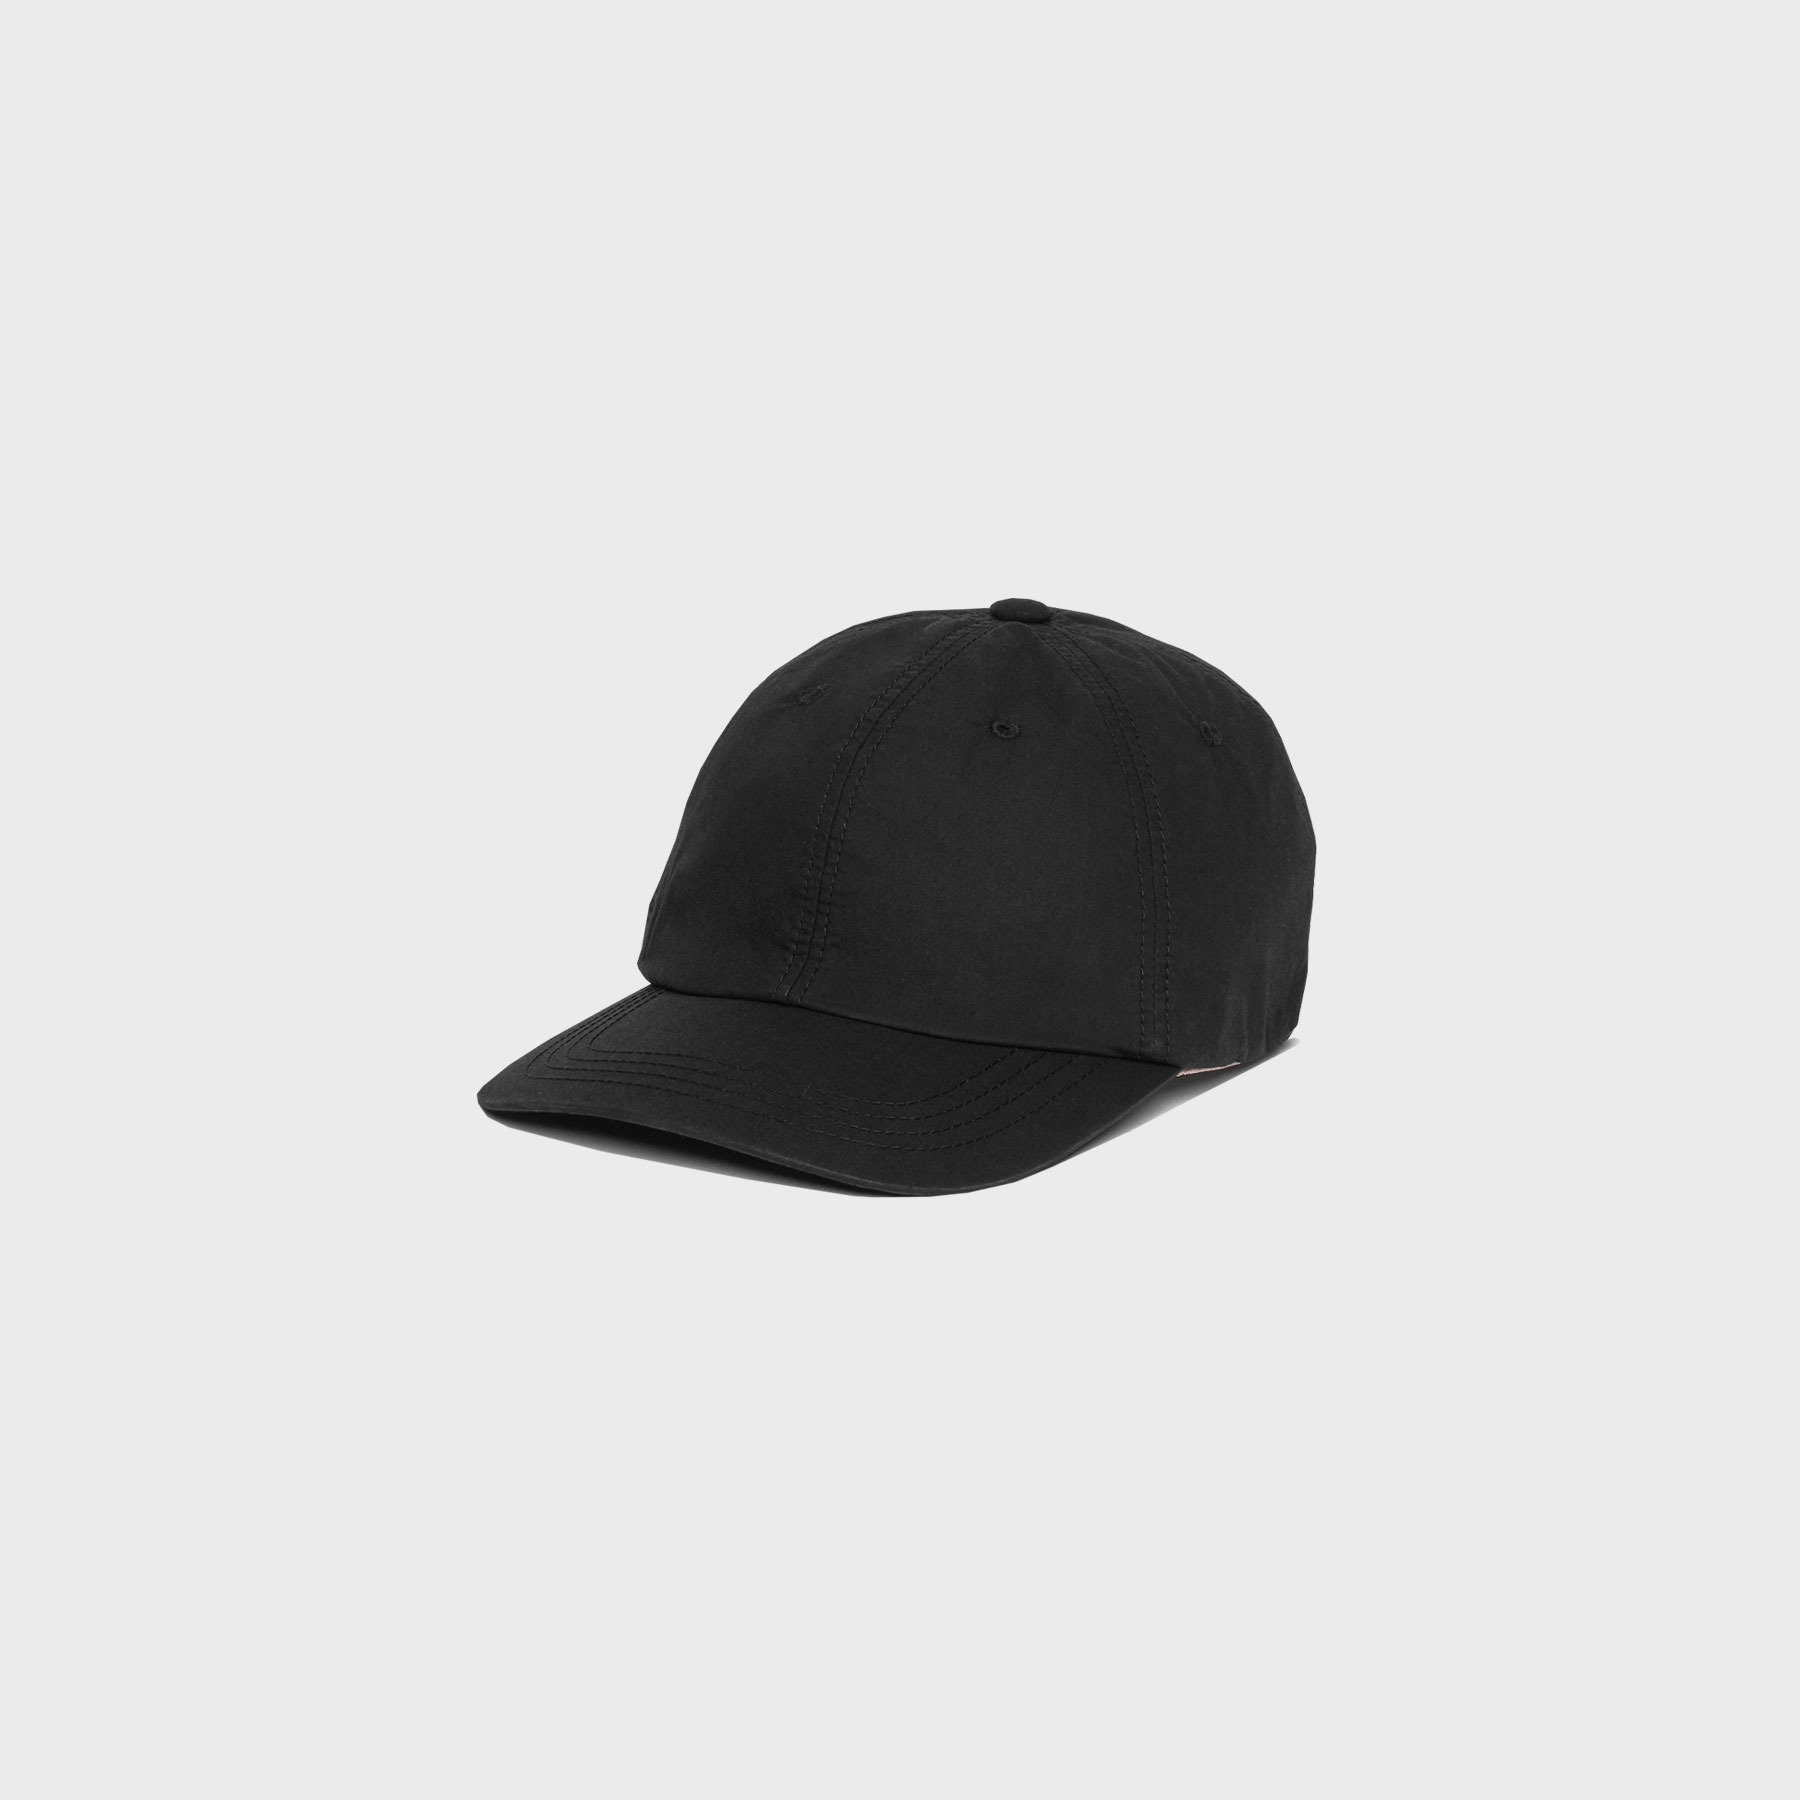 cotton series cap (black)